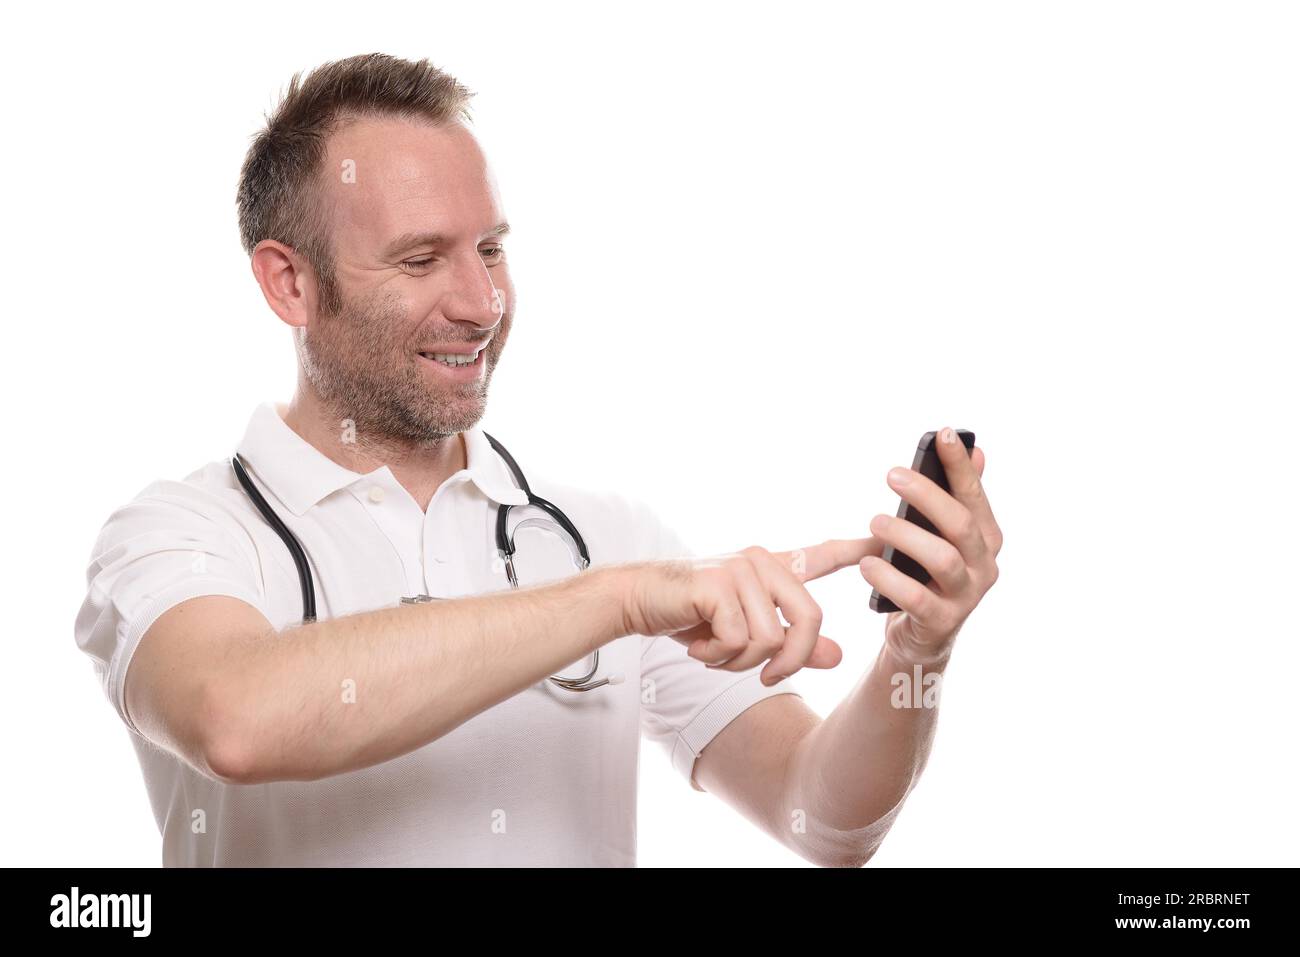 Lächelnd unrasiert glücklicher Arzt, der einen Anruf auf seinem Handy tätigt, in Erwartung der guten Nachricht einer erfolgreichen Behandlung oder Diagnose, isoliert Stockfoto